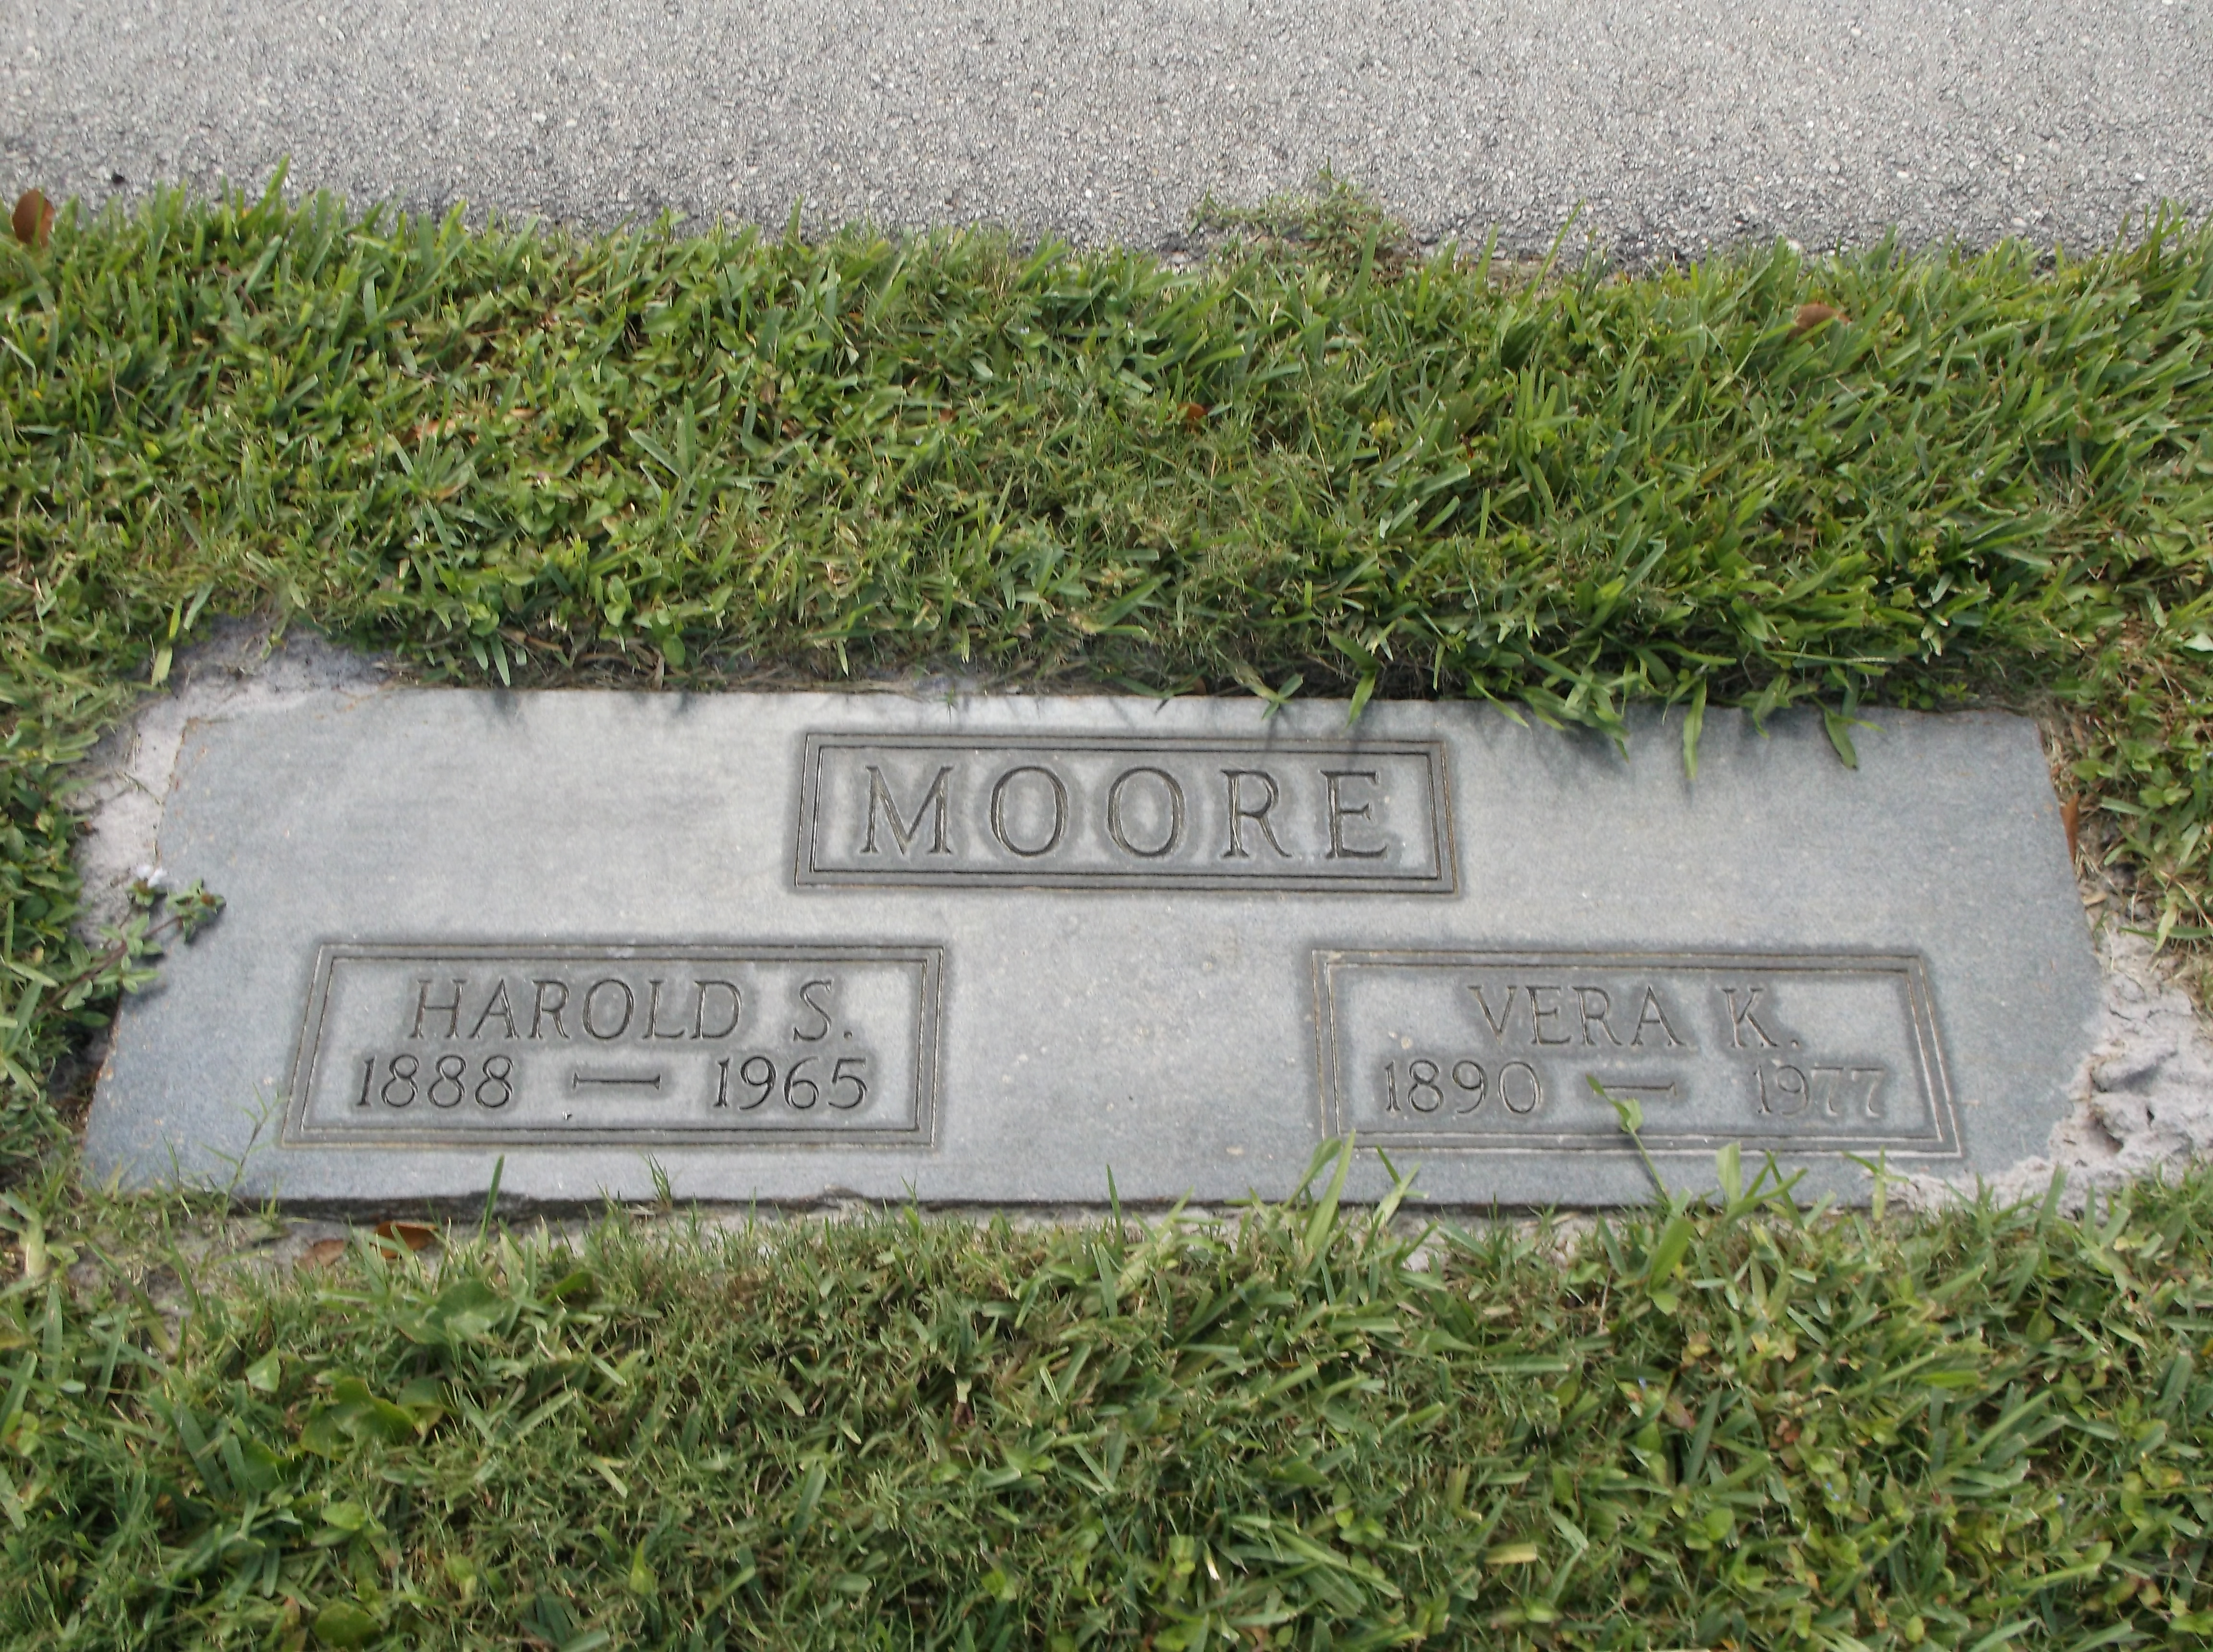 Harold S Moore